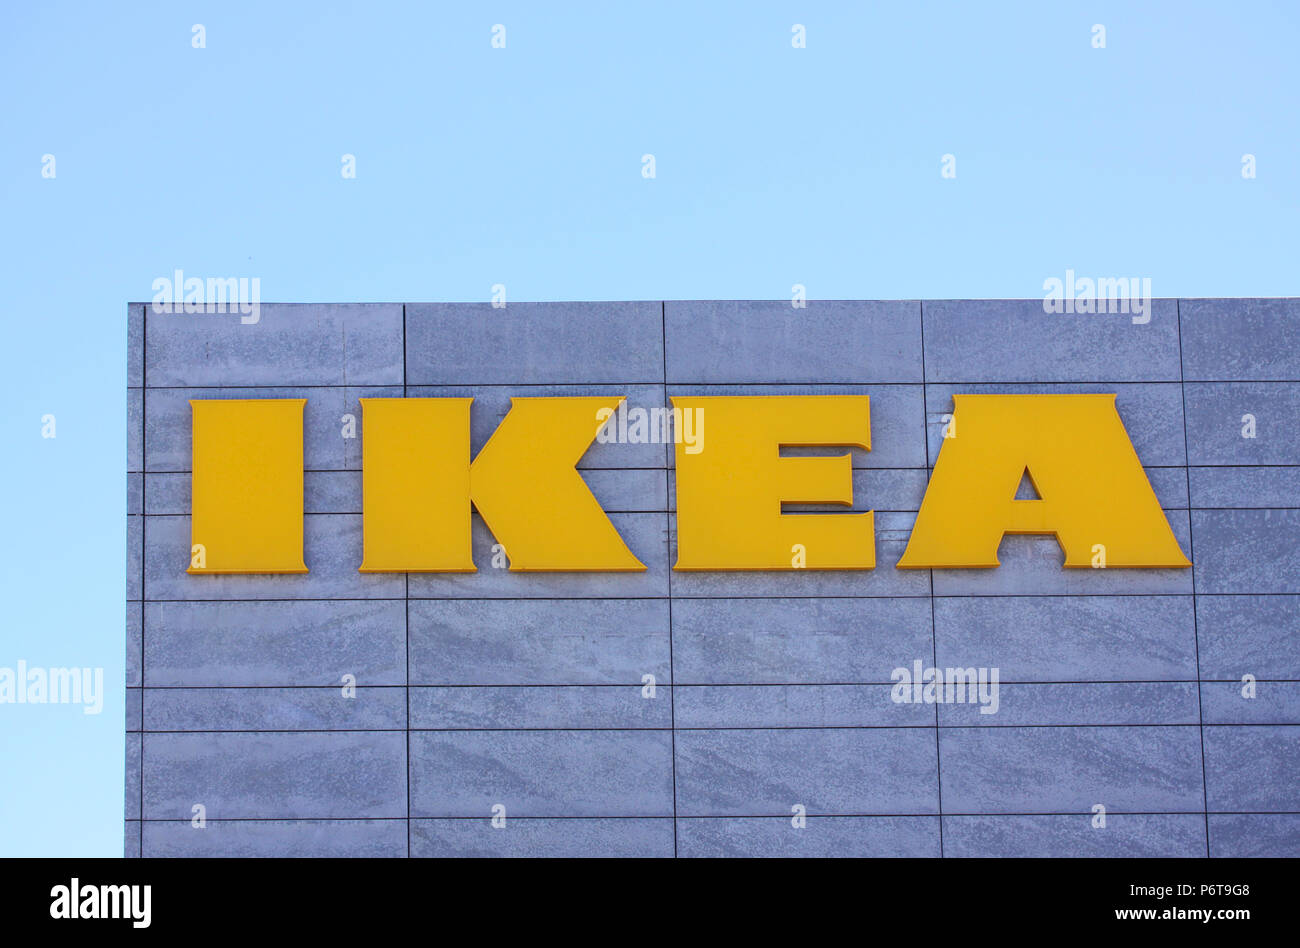 Copenhague, Danemark - 2 juillet 2018 : le logo IKEA sur le mur de type marché IKEA contre un ciel bleu. Ikea est le plus grand détaillant de meubles dans le monde Banque D'Images